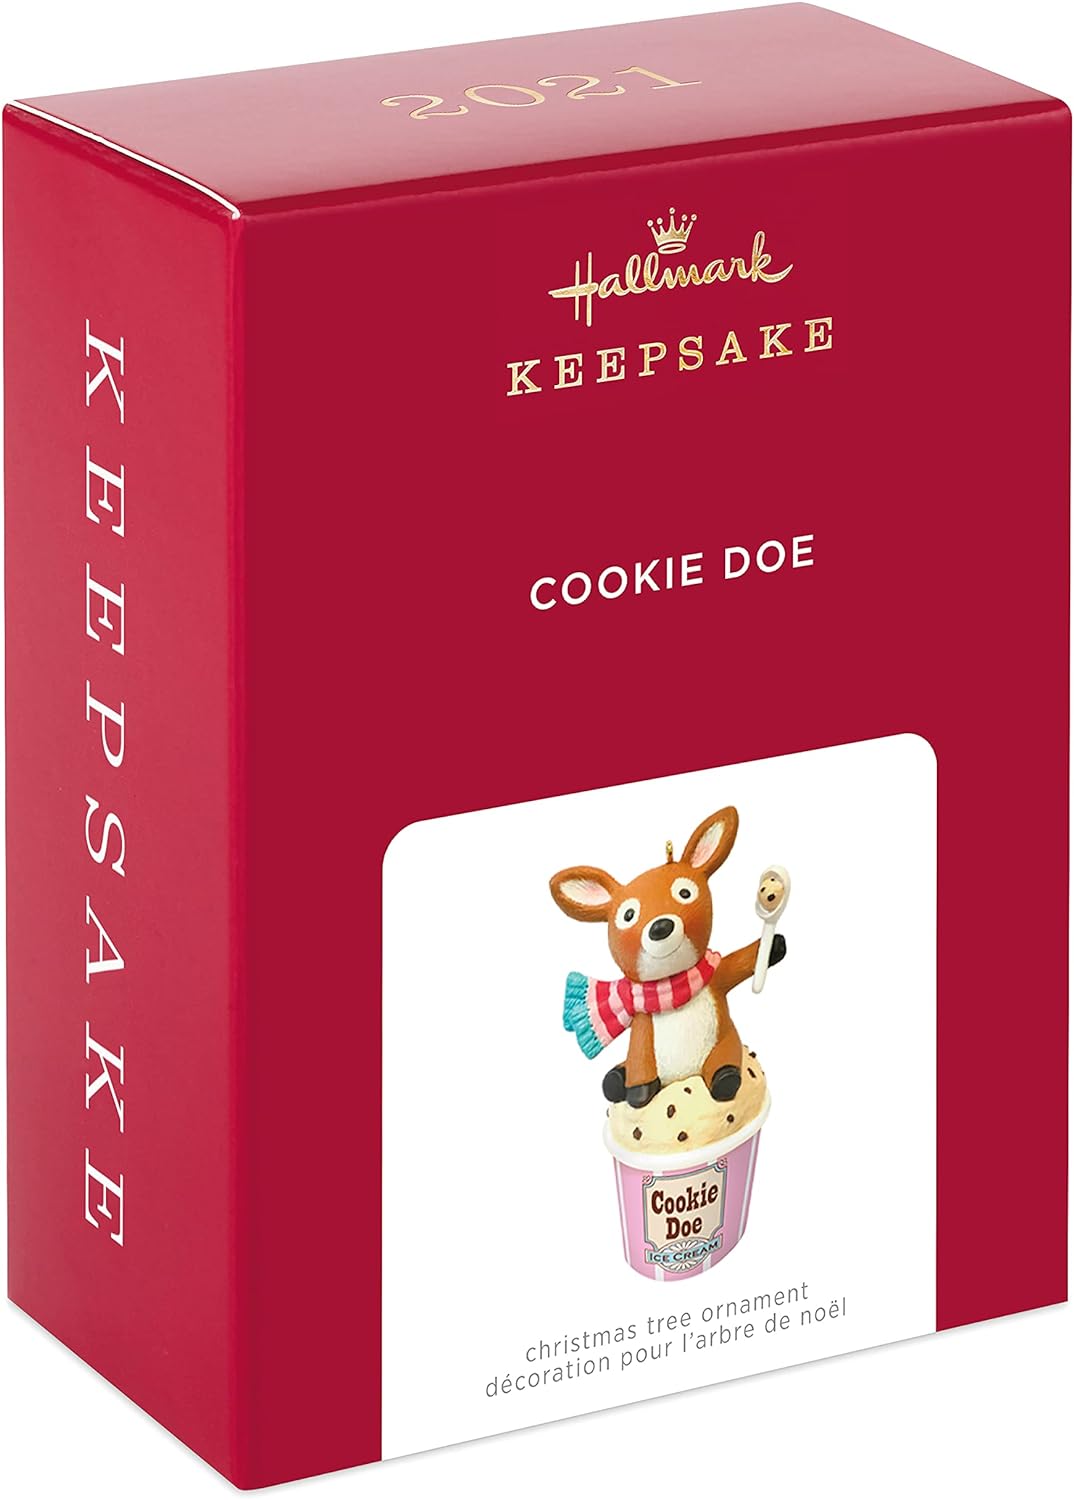 Cookie Doe Hallmark Keepsake Christmas Ornament 2021